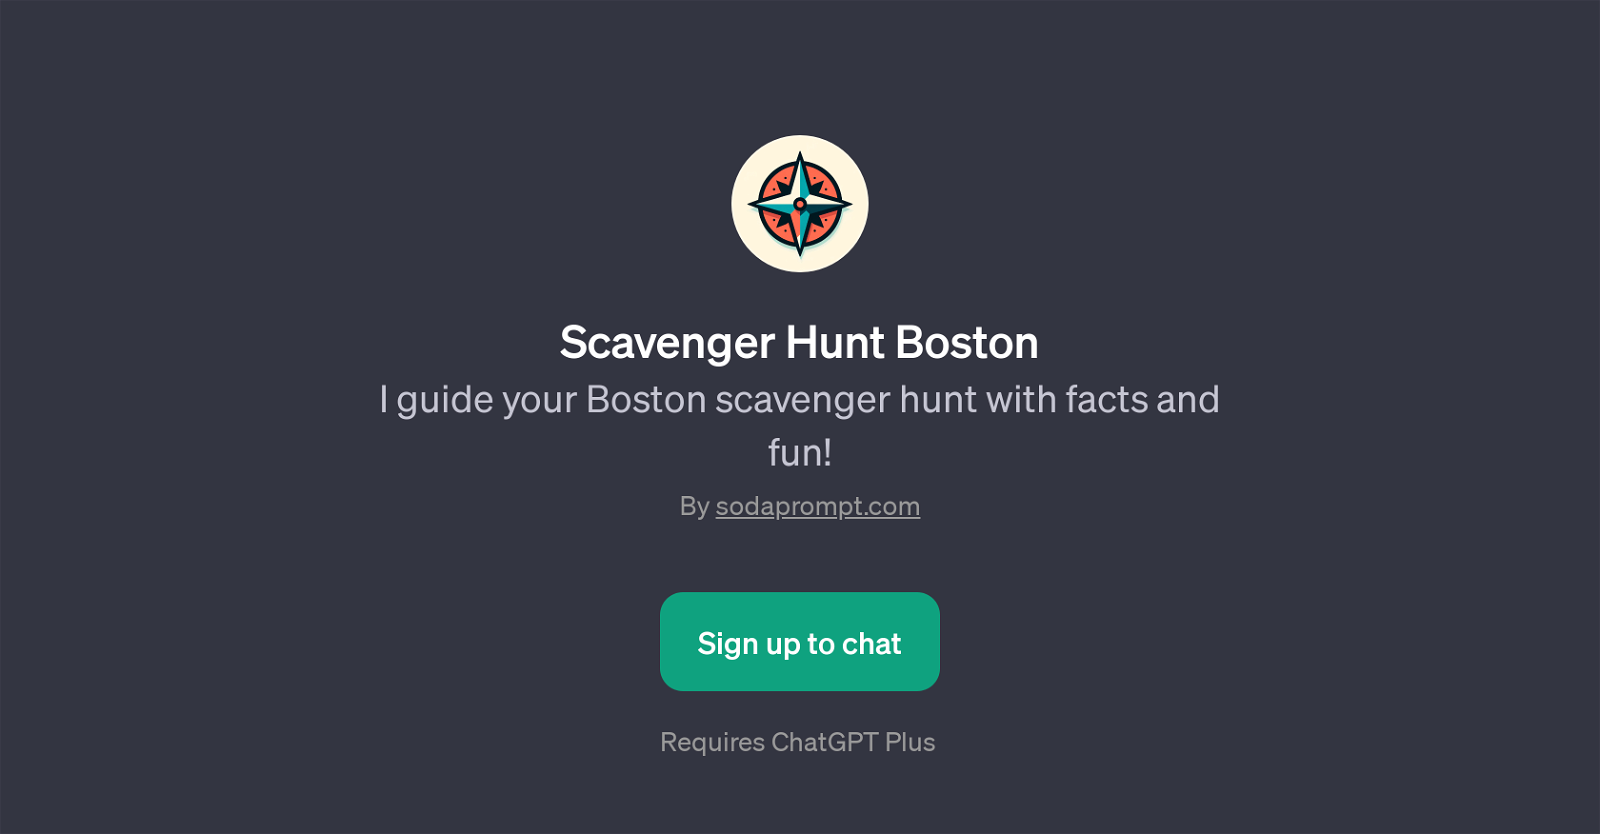 Scavenger Hunt Boston website